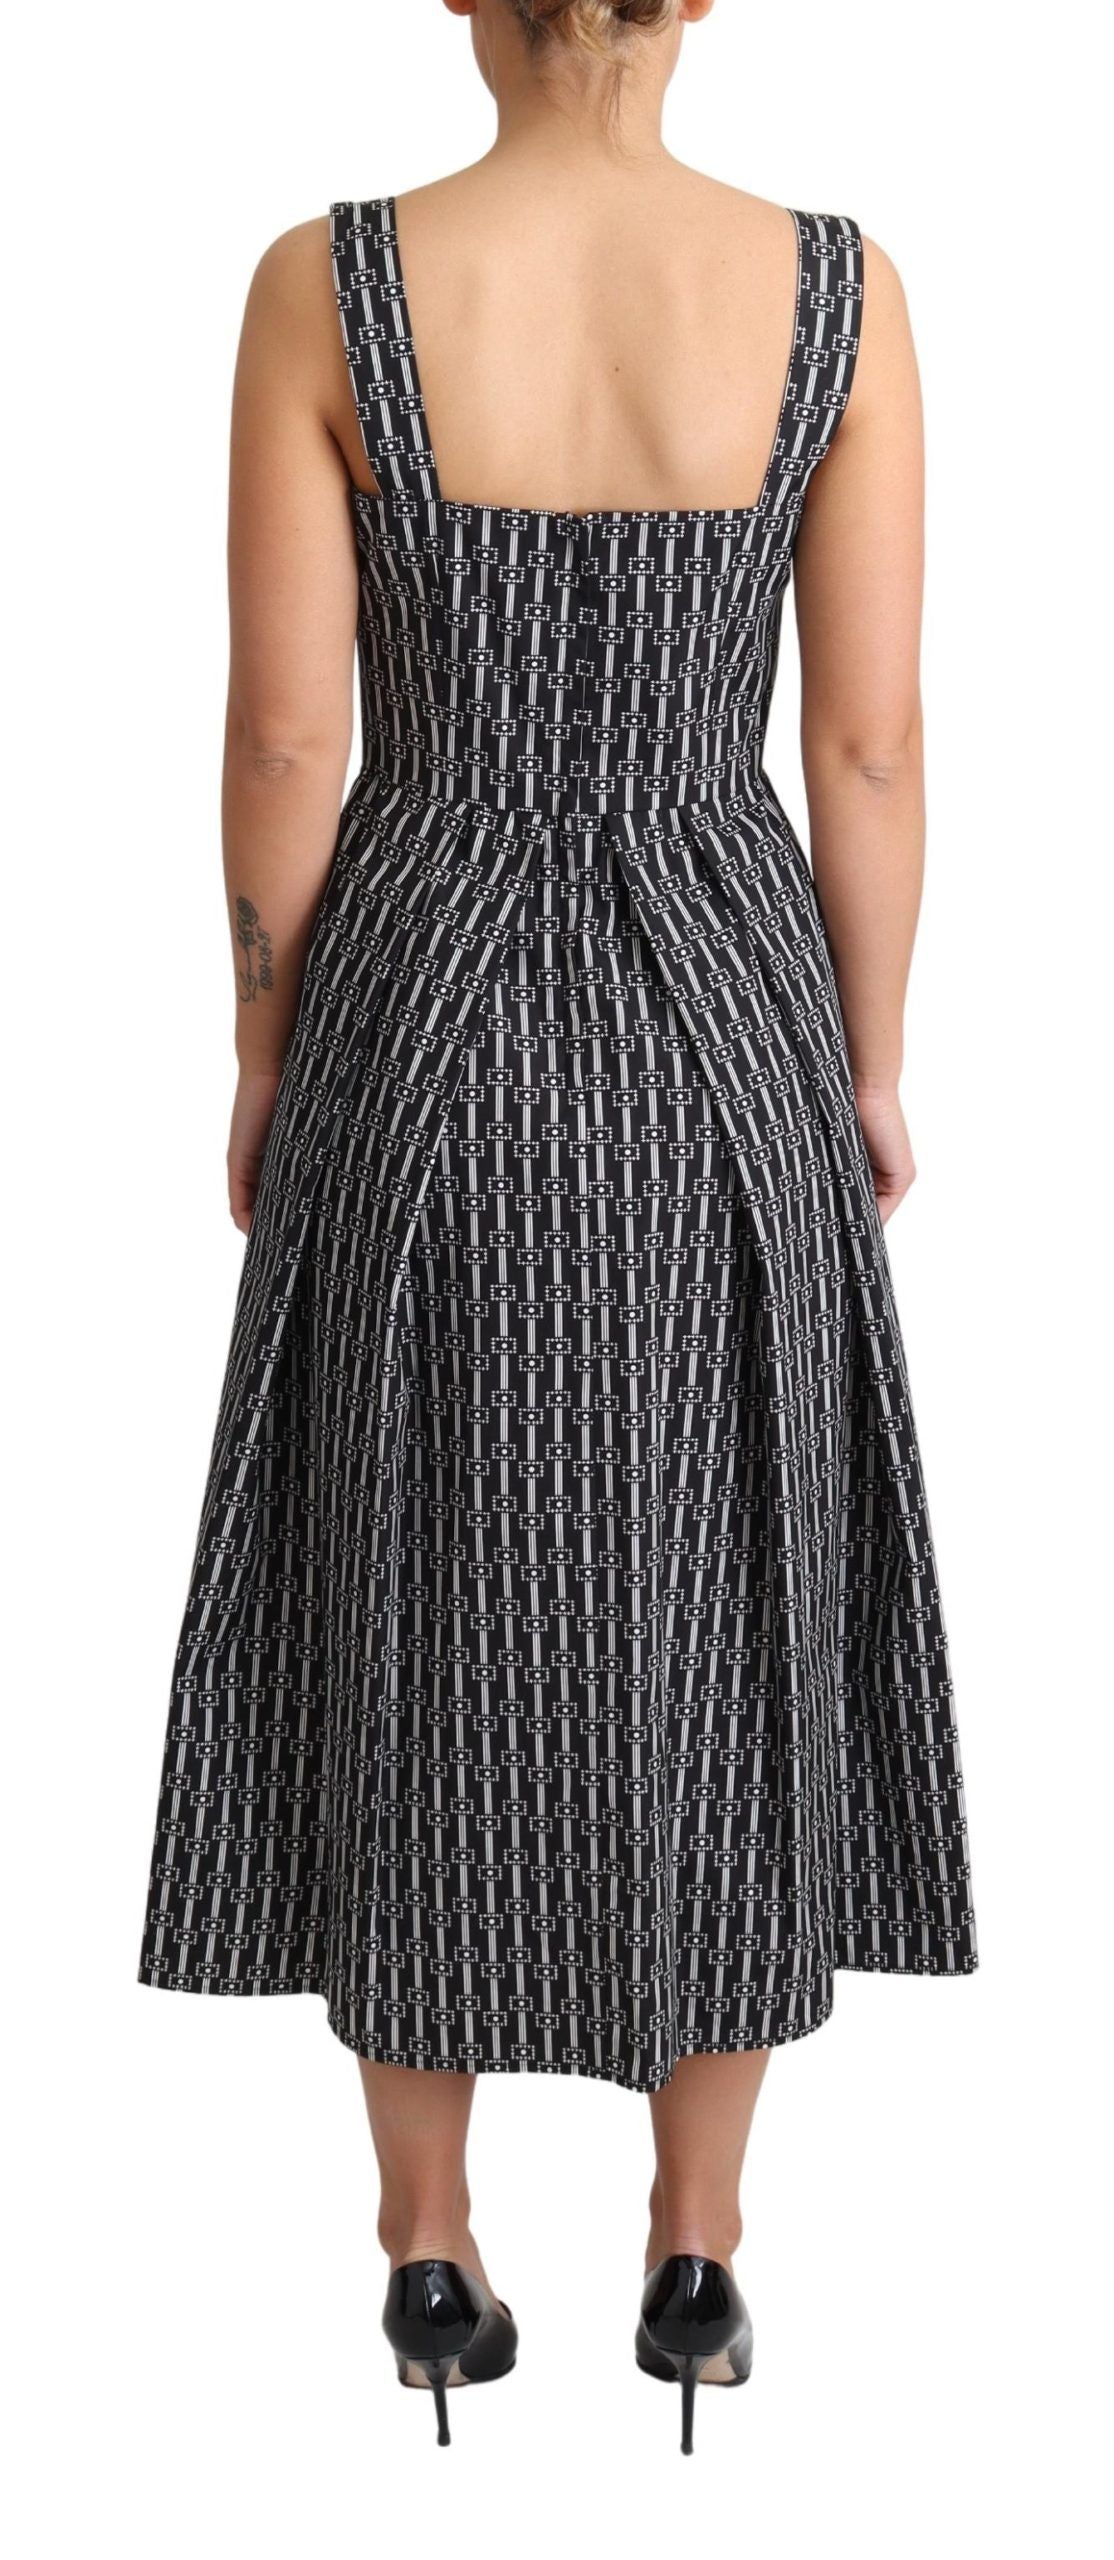 Black White Pattern Cotton A-Line Dress